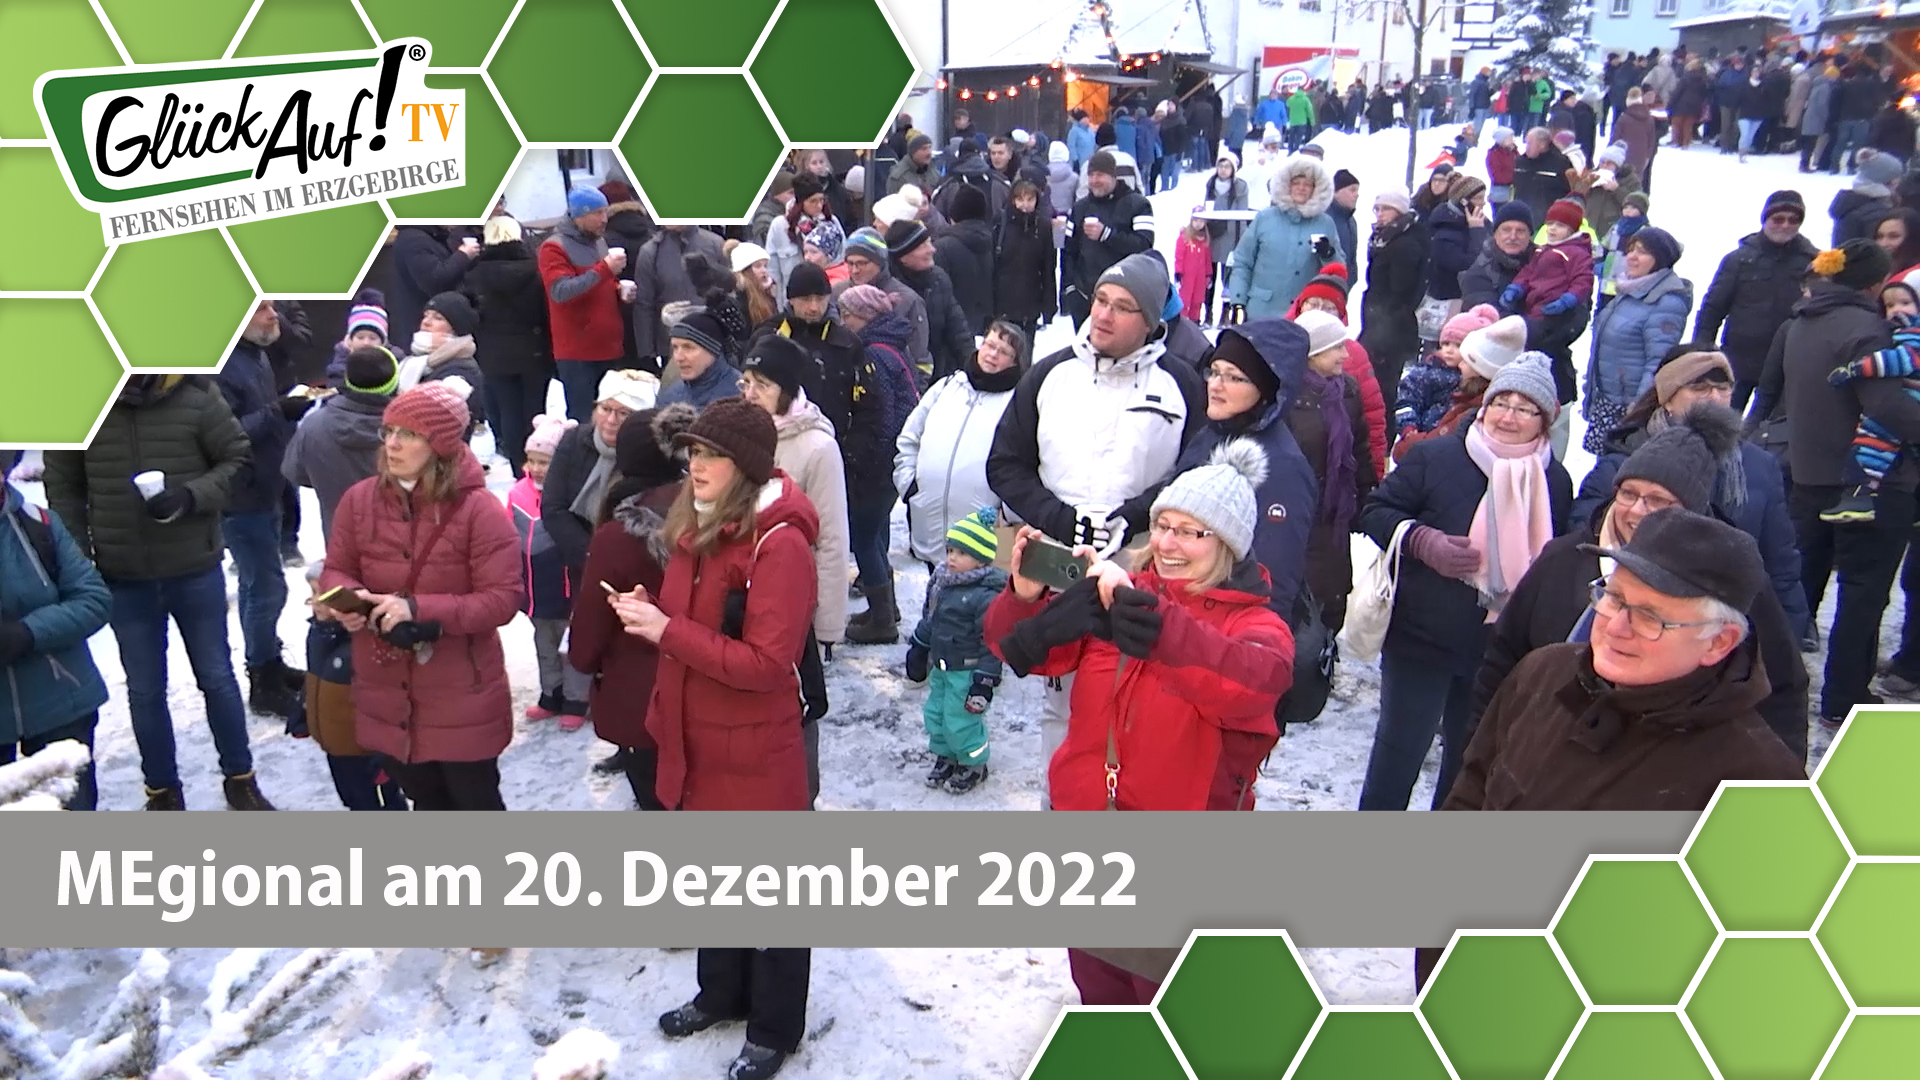 MEgional am 20. Dezember 2022 - mit dem Weihnachtsmarkt in Sayda